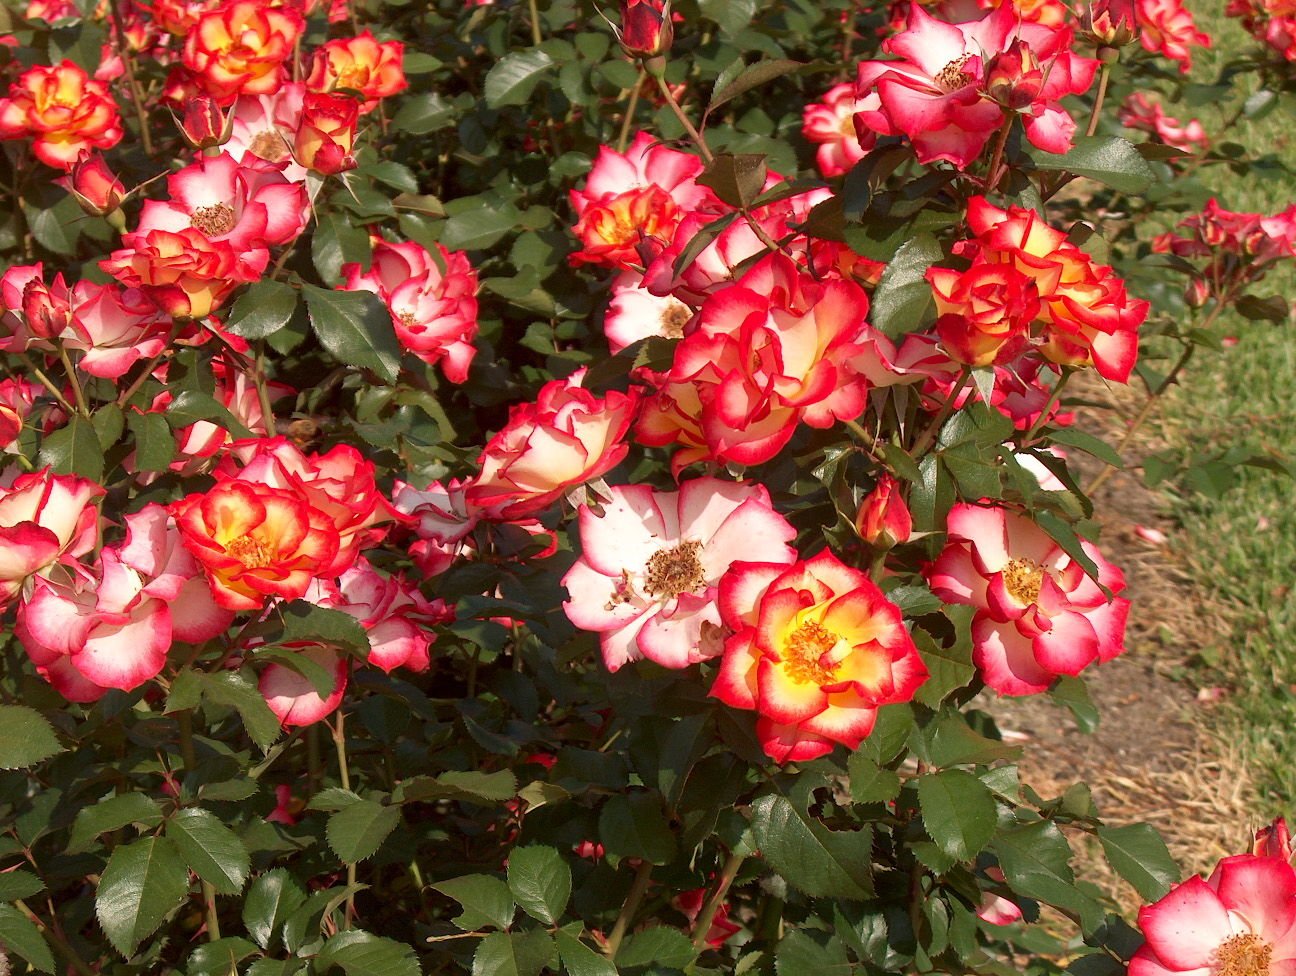 Ред голд роза флорибунда фото и описание